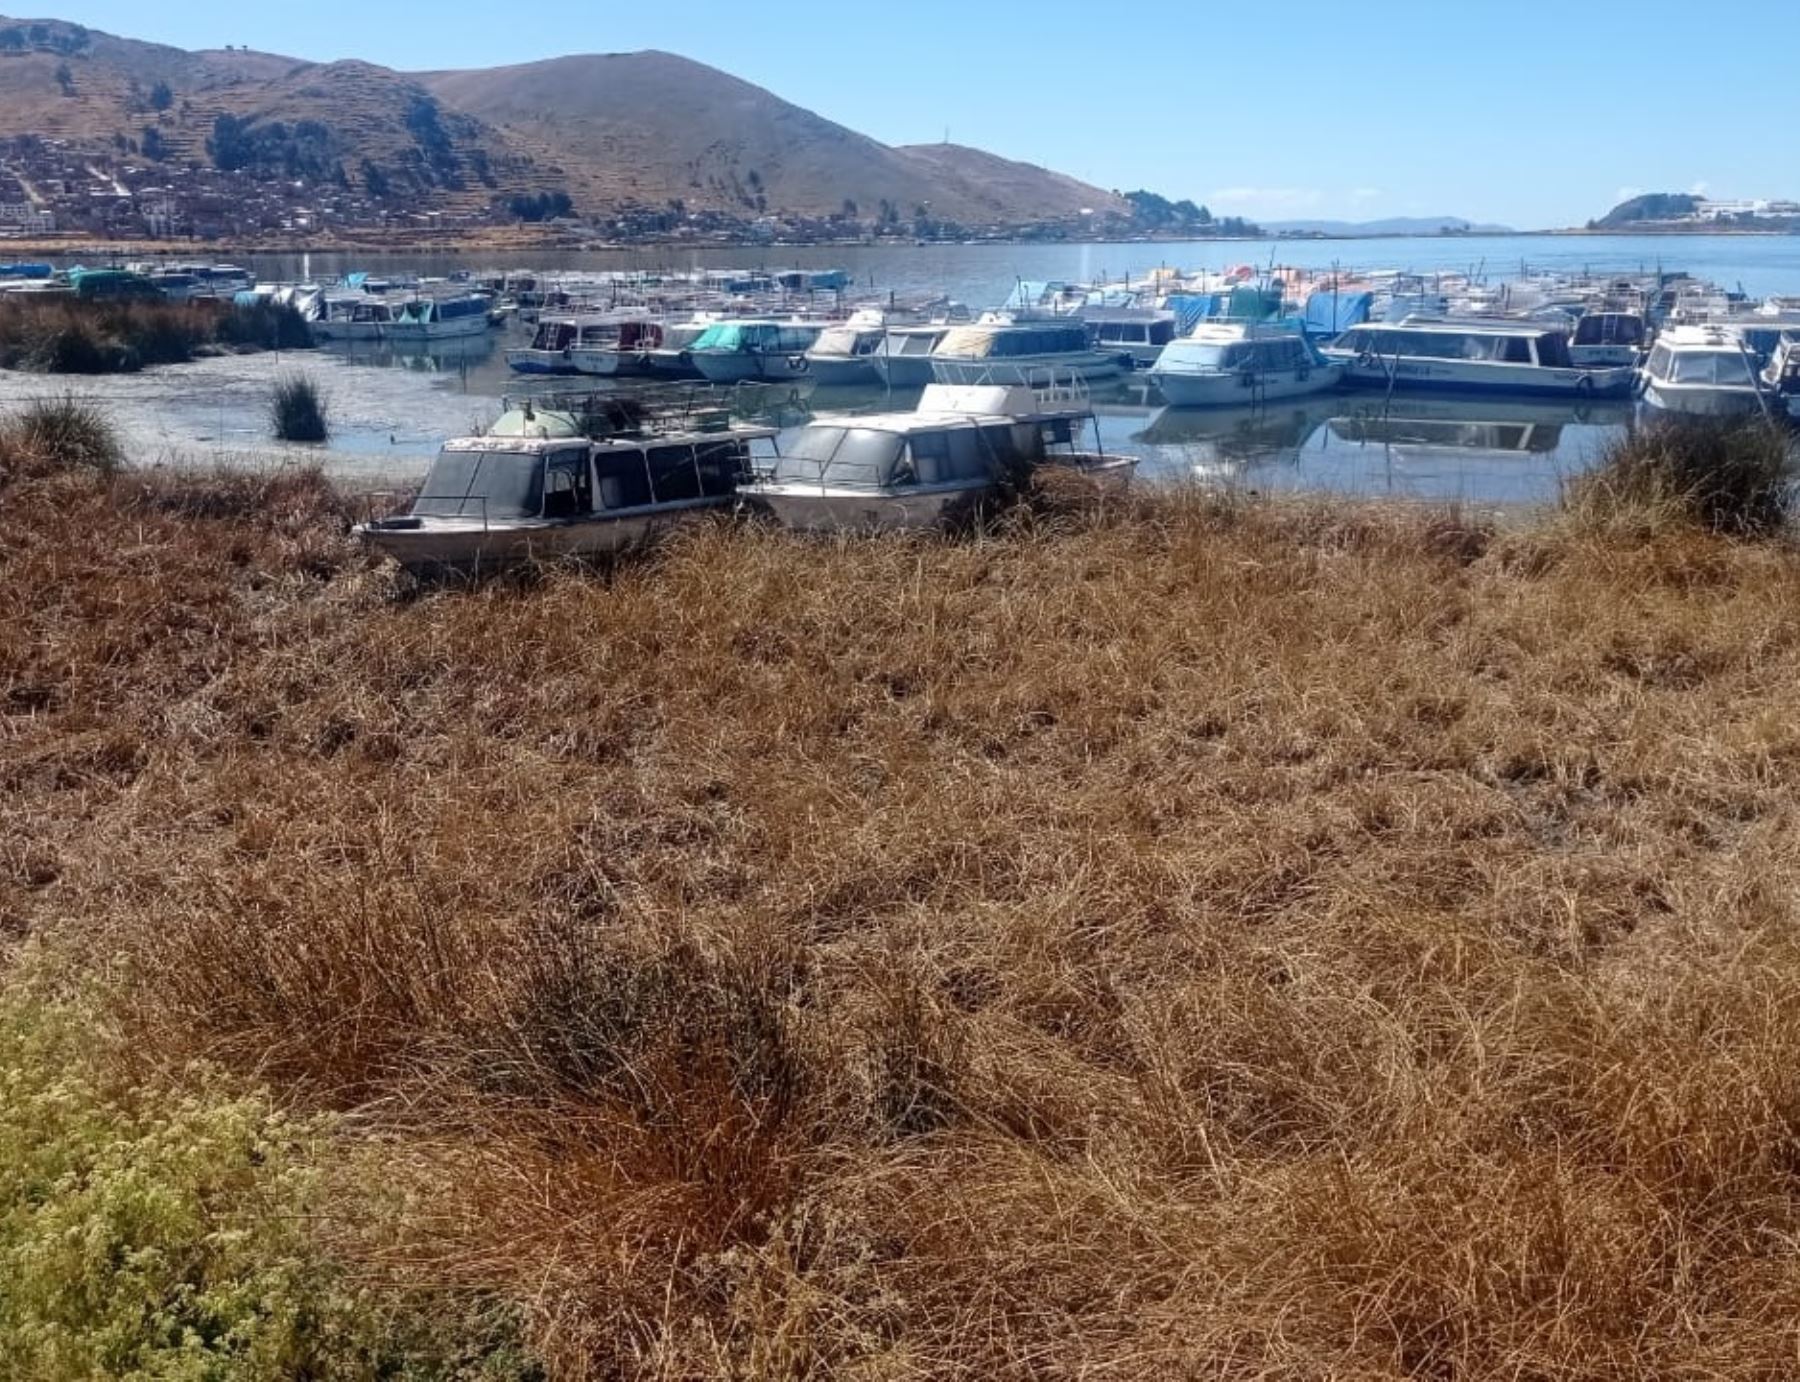 El nivel del agua del lago Titicaca registra un significativo descenso a causa del déficit hídrico que afecta a Puno. Esta situación perjudica al transporte turístico que opera en el lago. Foto: Sergio Mamani